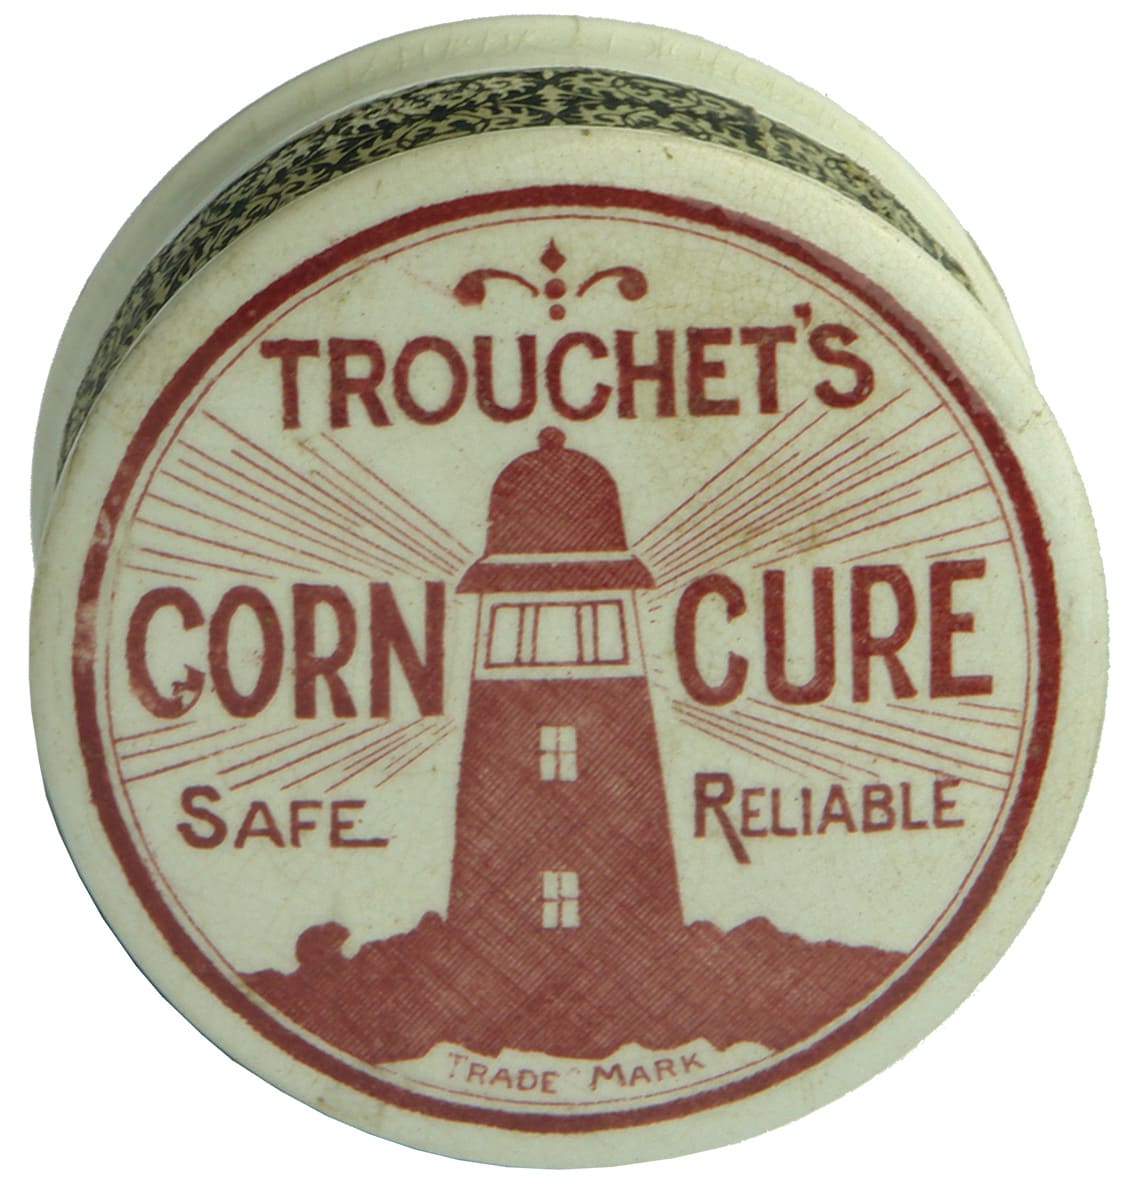 Trouchet's Corn Cure Safe Reliable Lightbouse Pot Lid